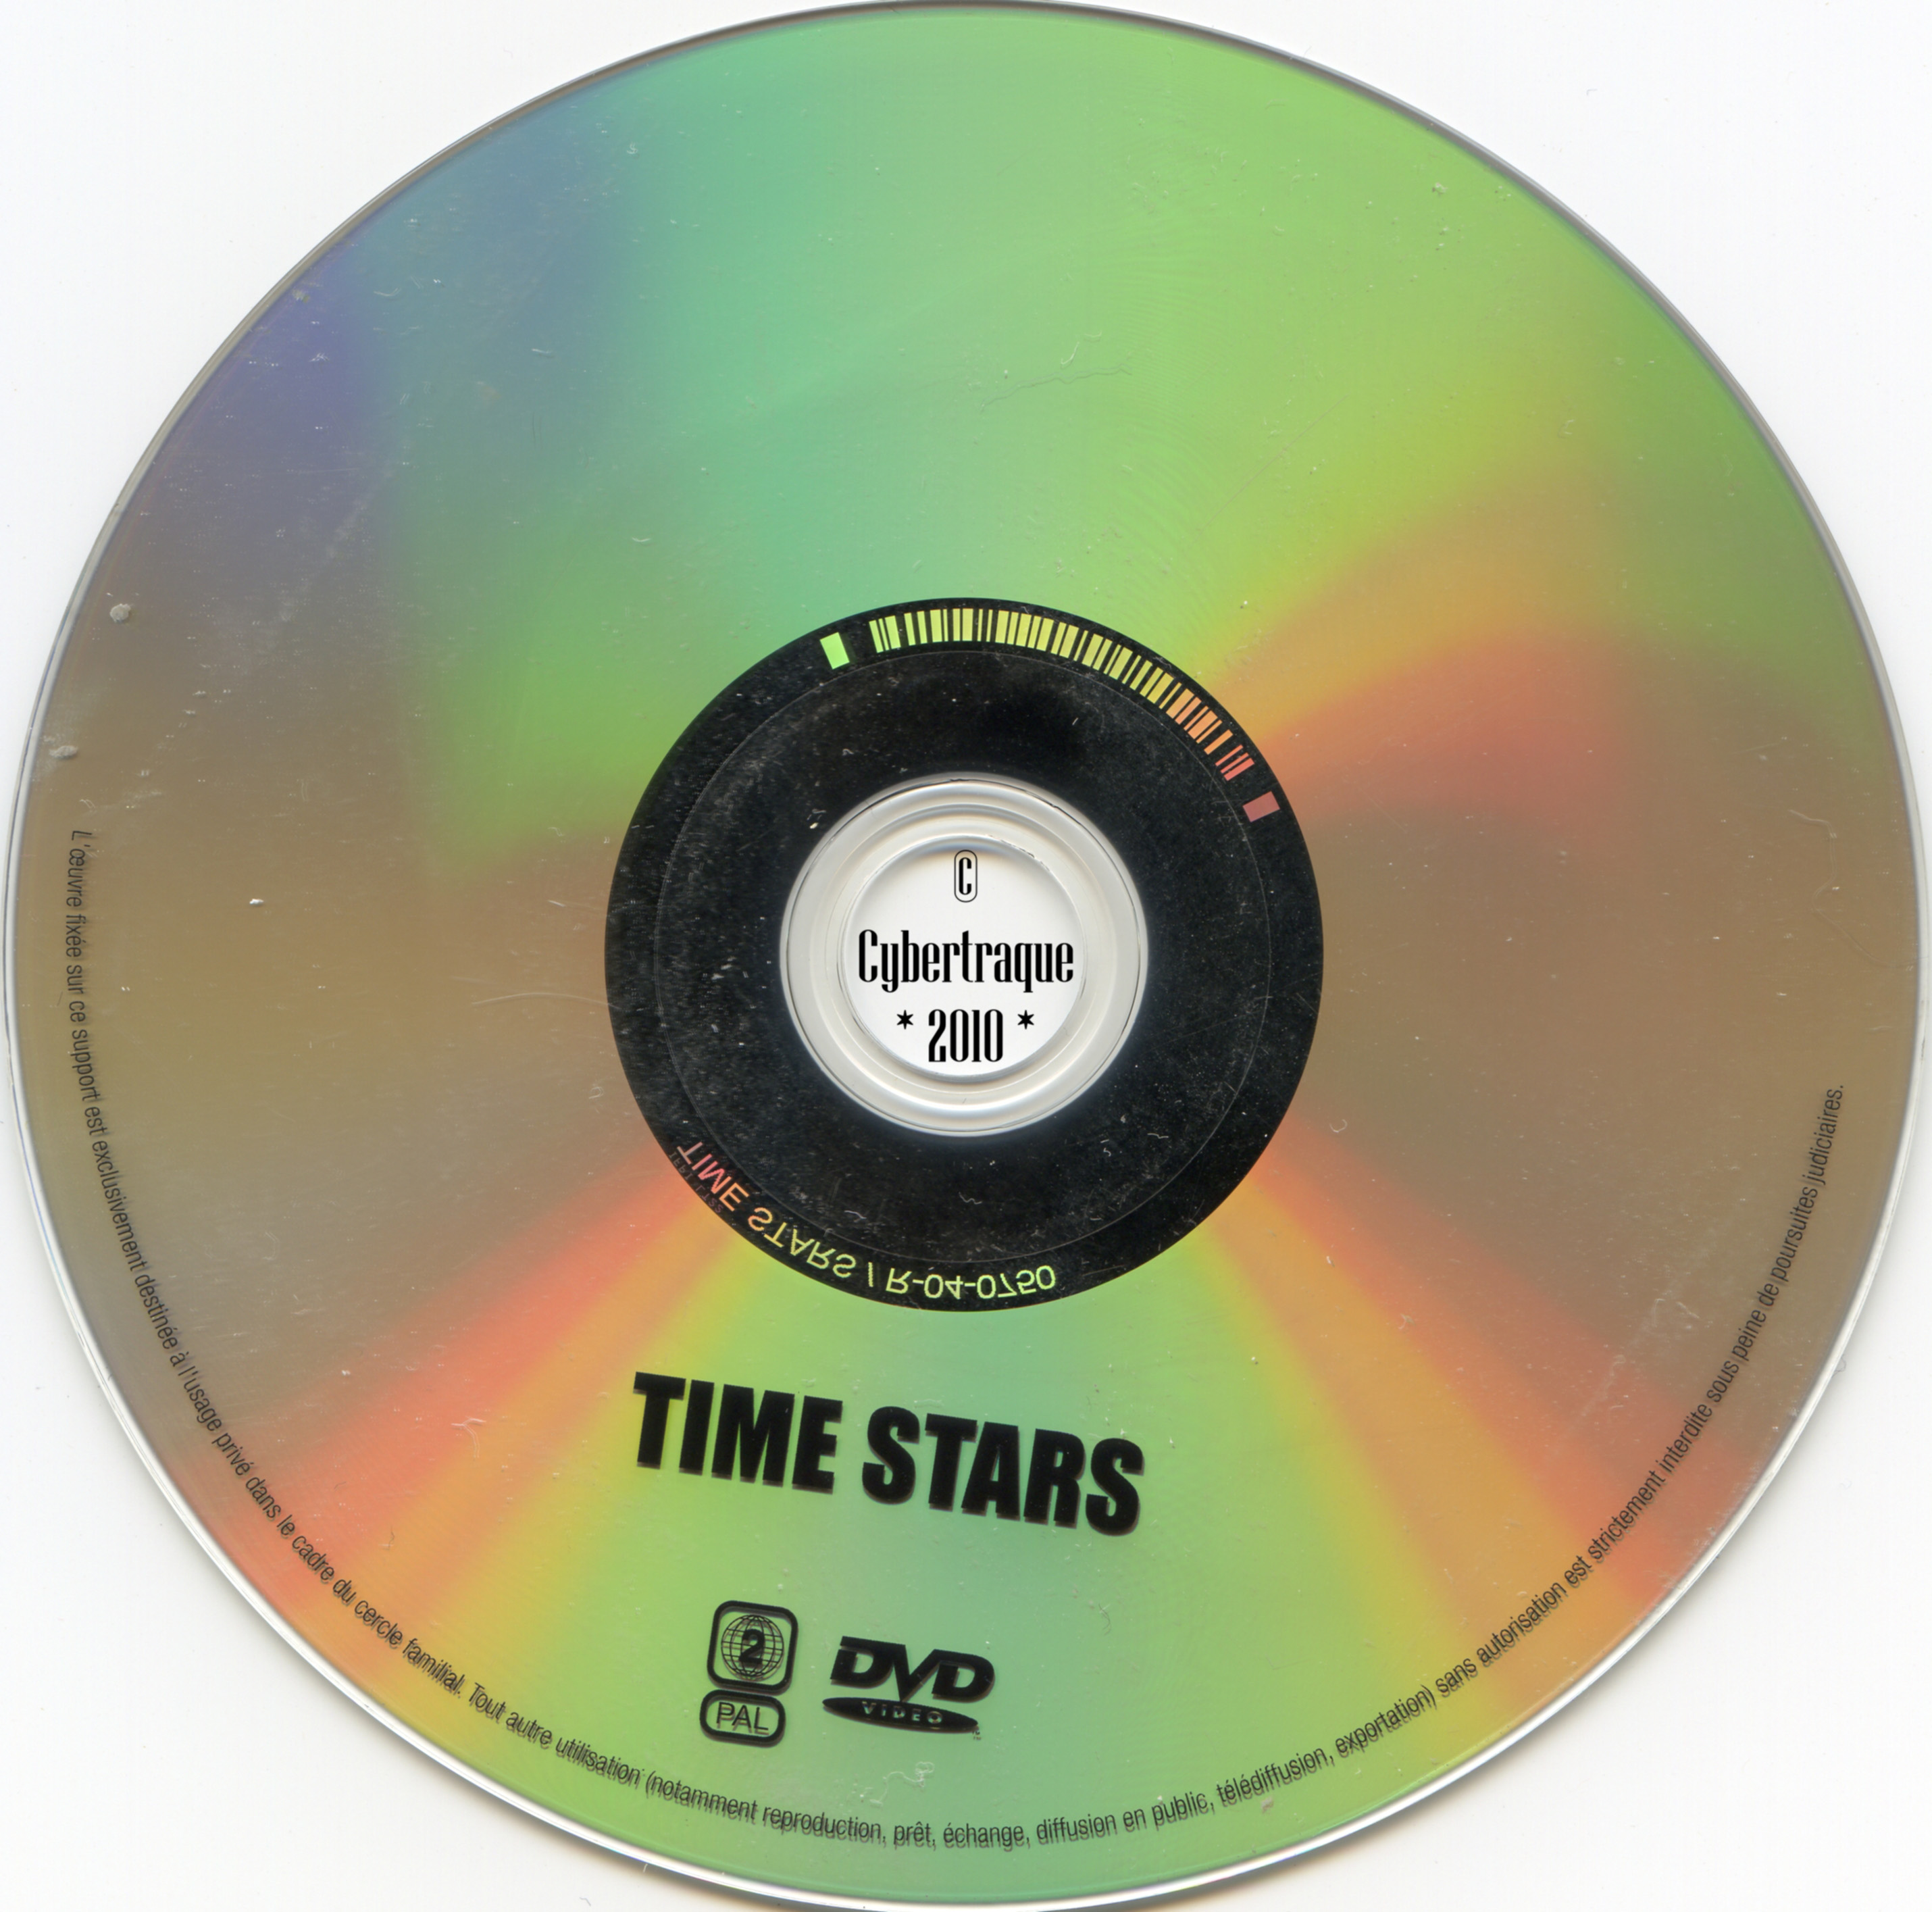 Time stars v2